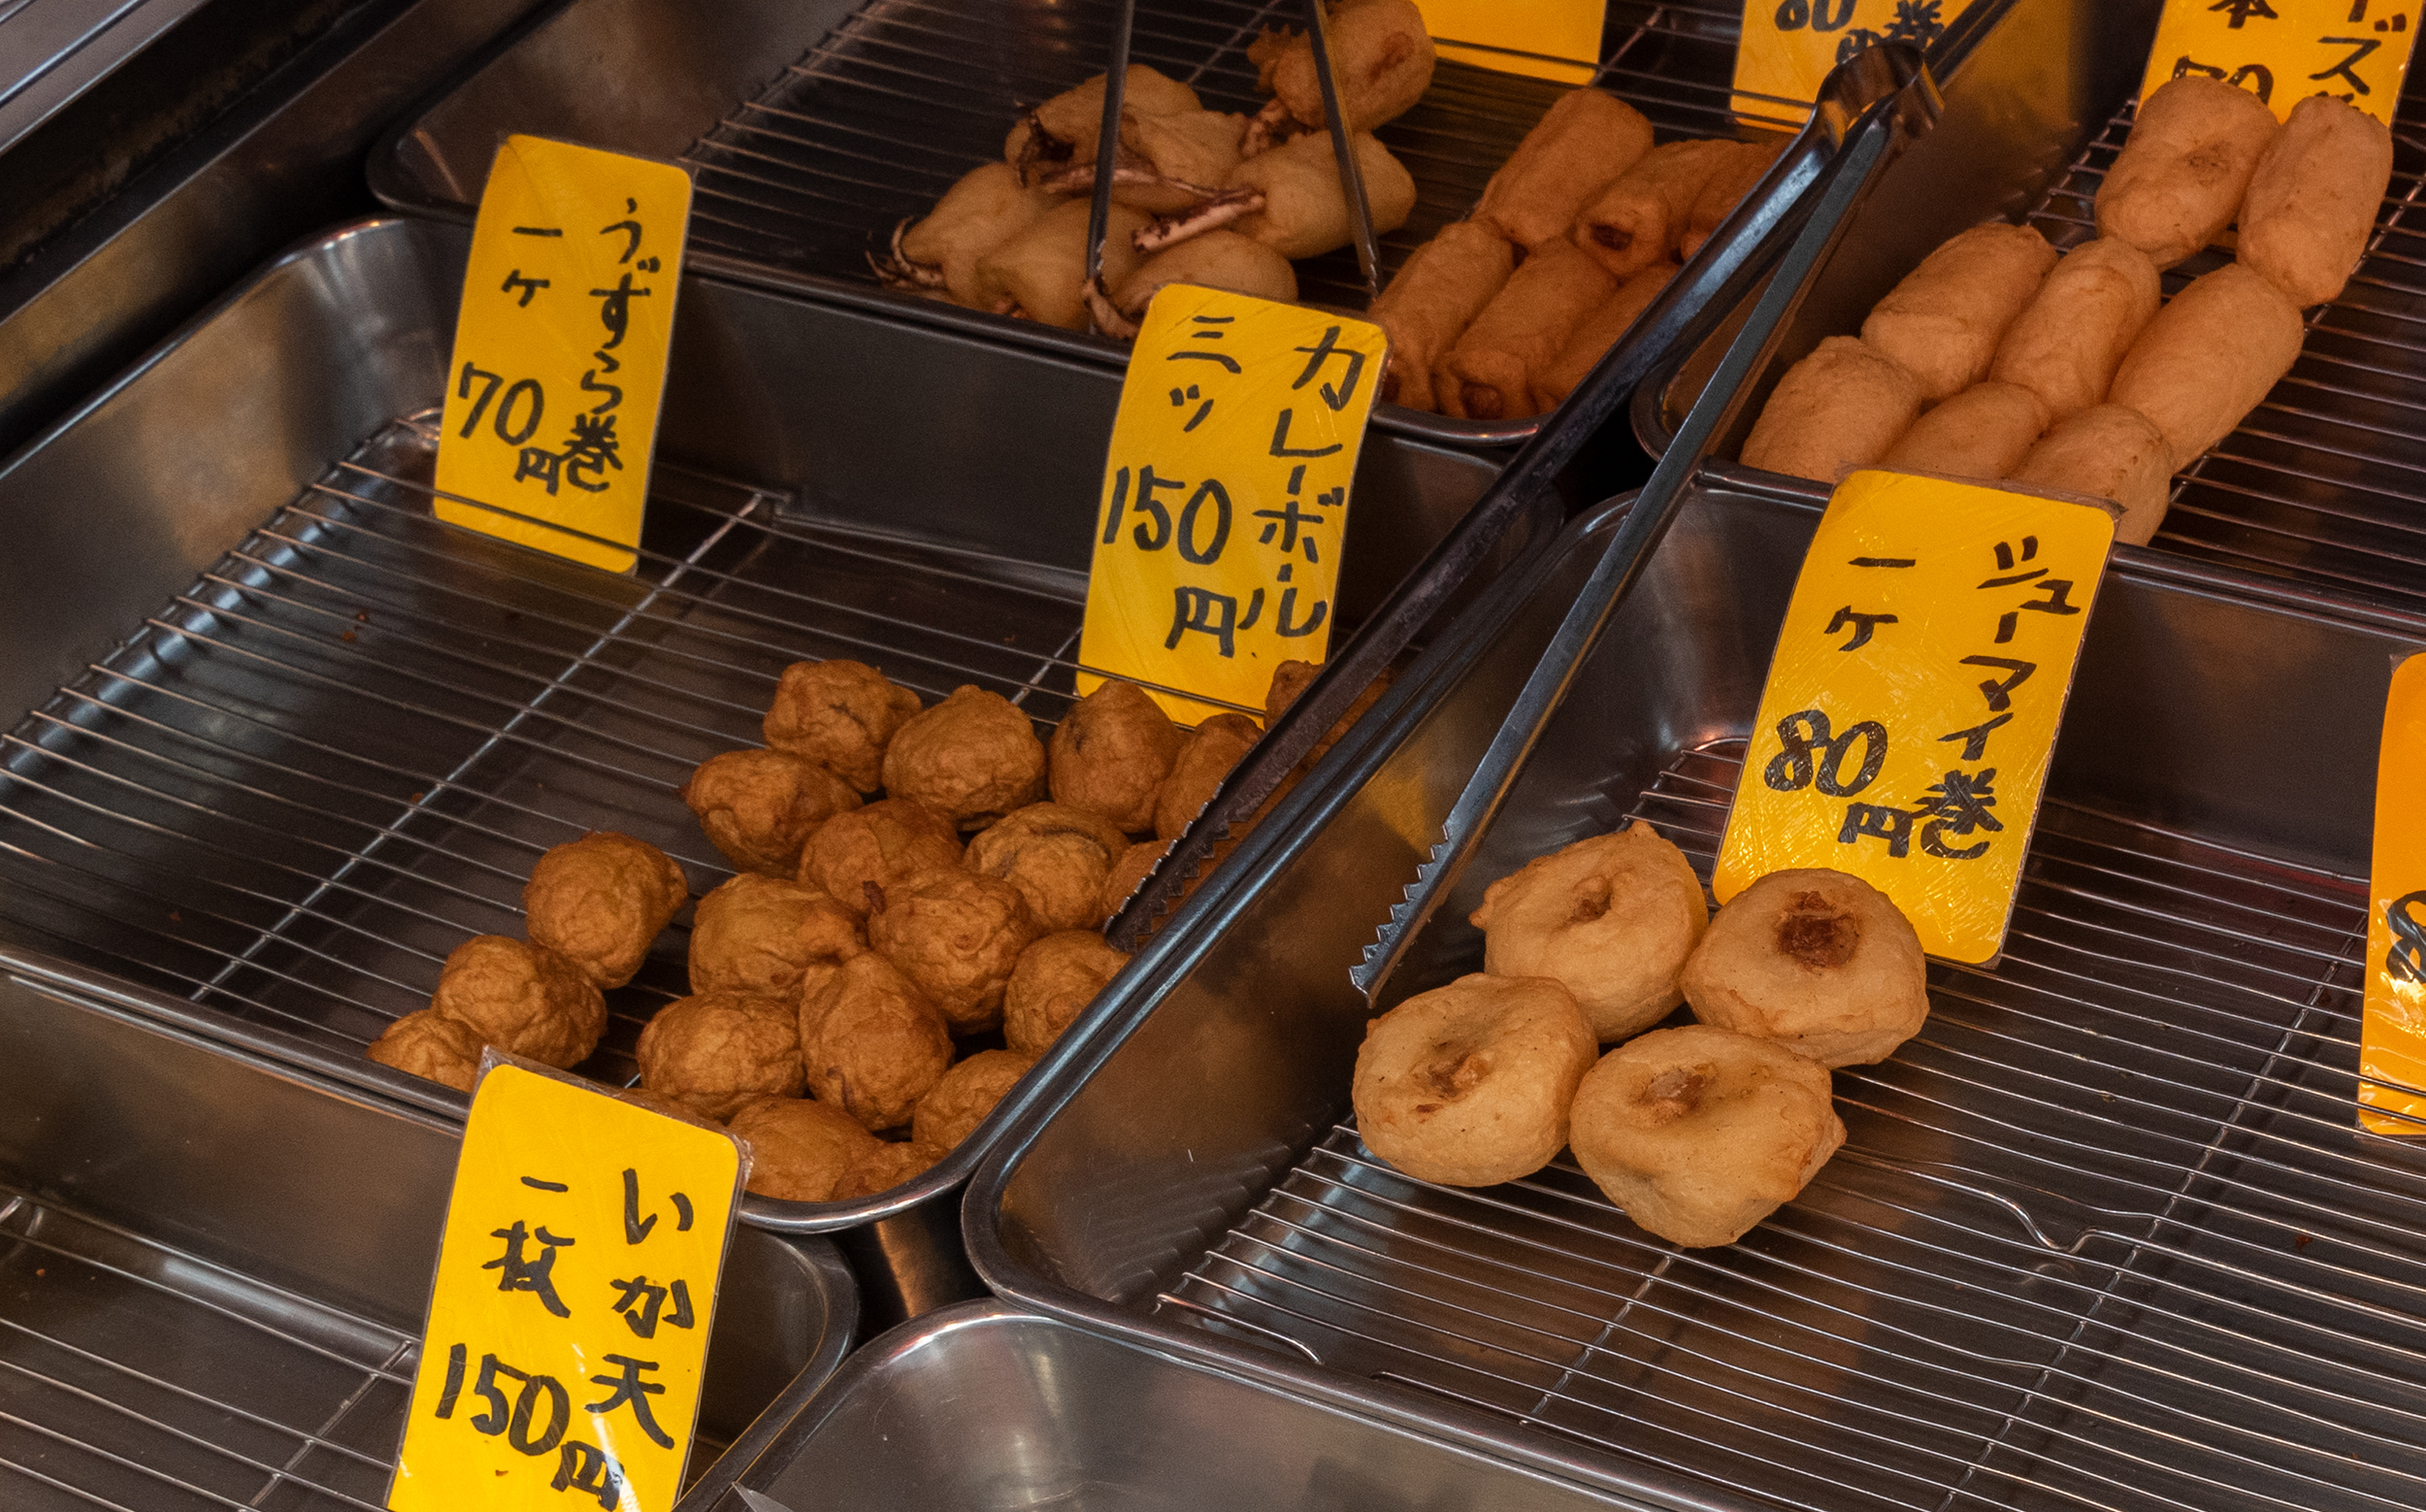 東京のおでん種専門店で売られているカレーボール